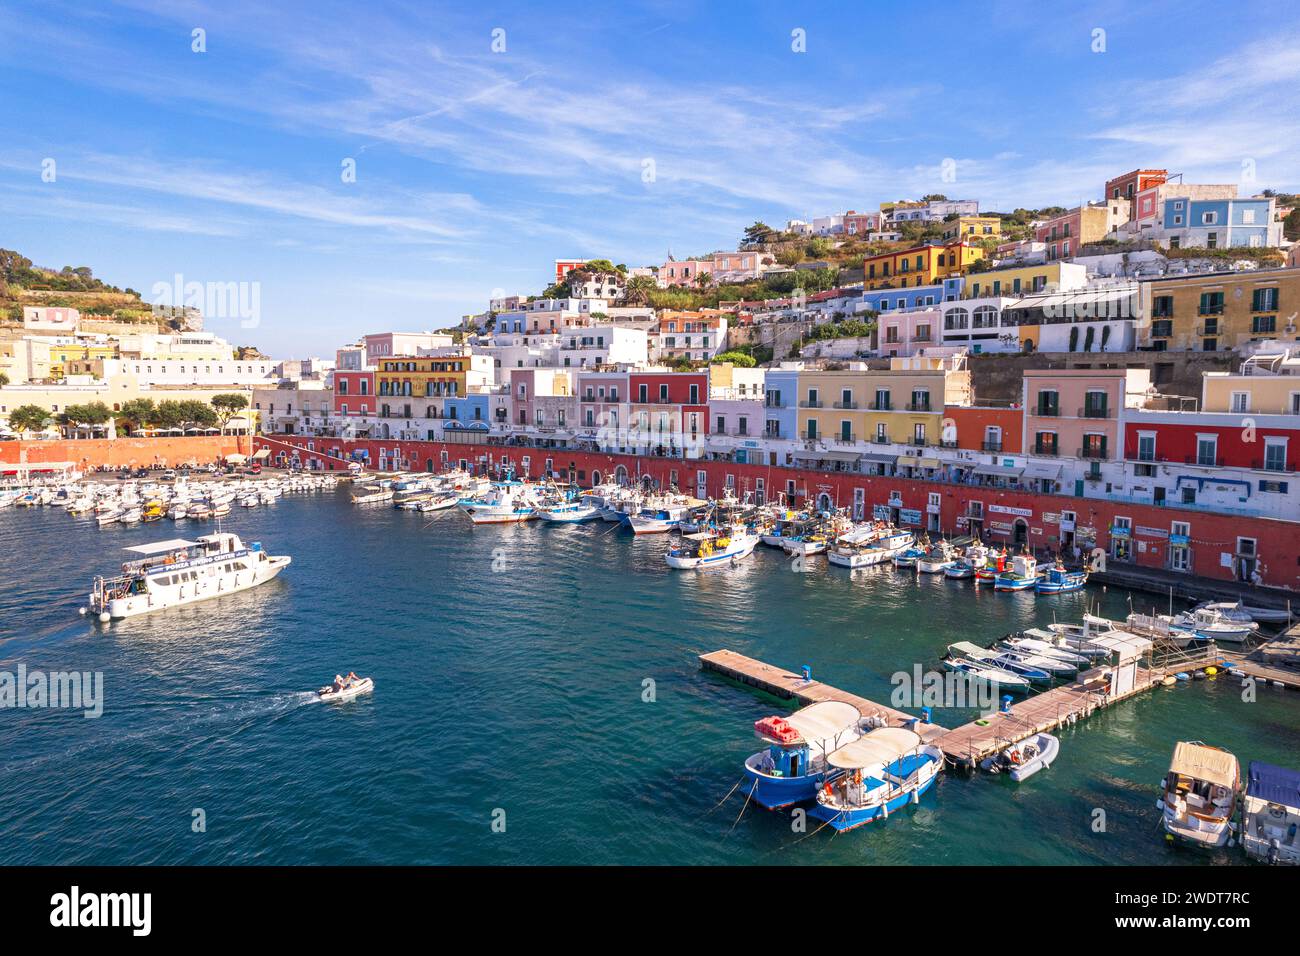 Il porto di pescatori dell'isola di Ponza con le tipiche case colorate sul lungomare, l'isola di Ponza e l'arcipelago pontino Foto Stock